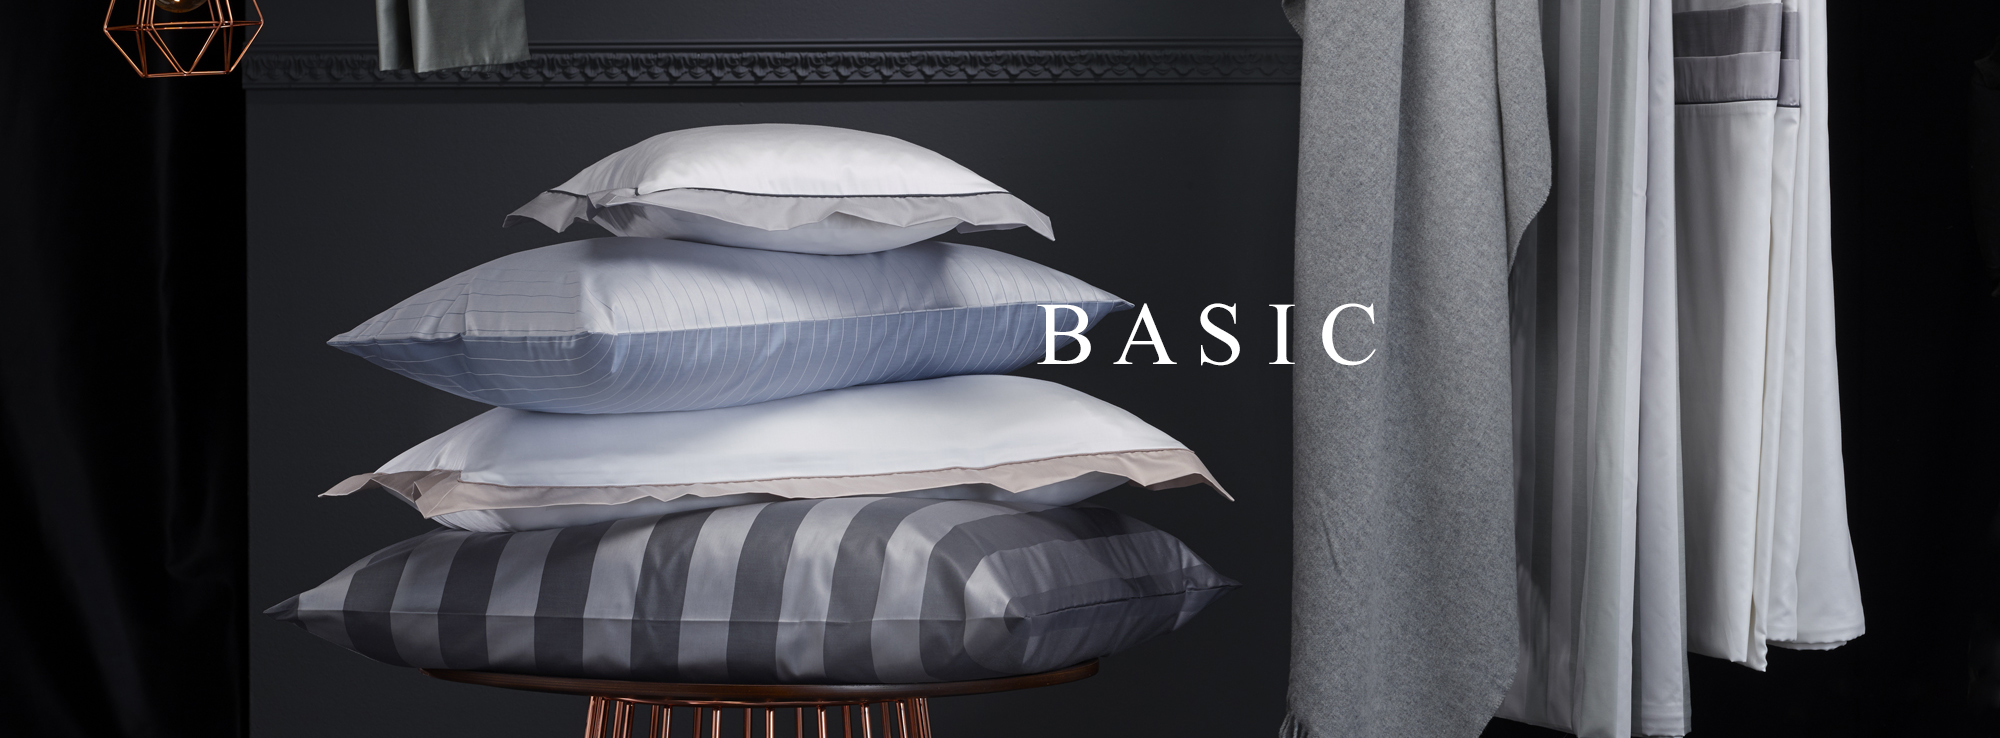 BASIC bed linen